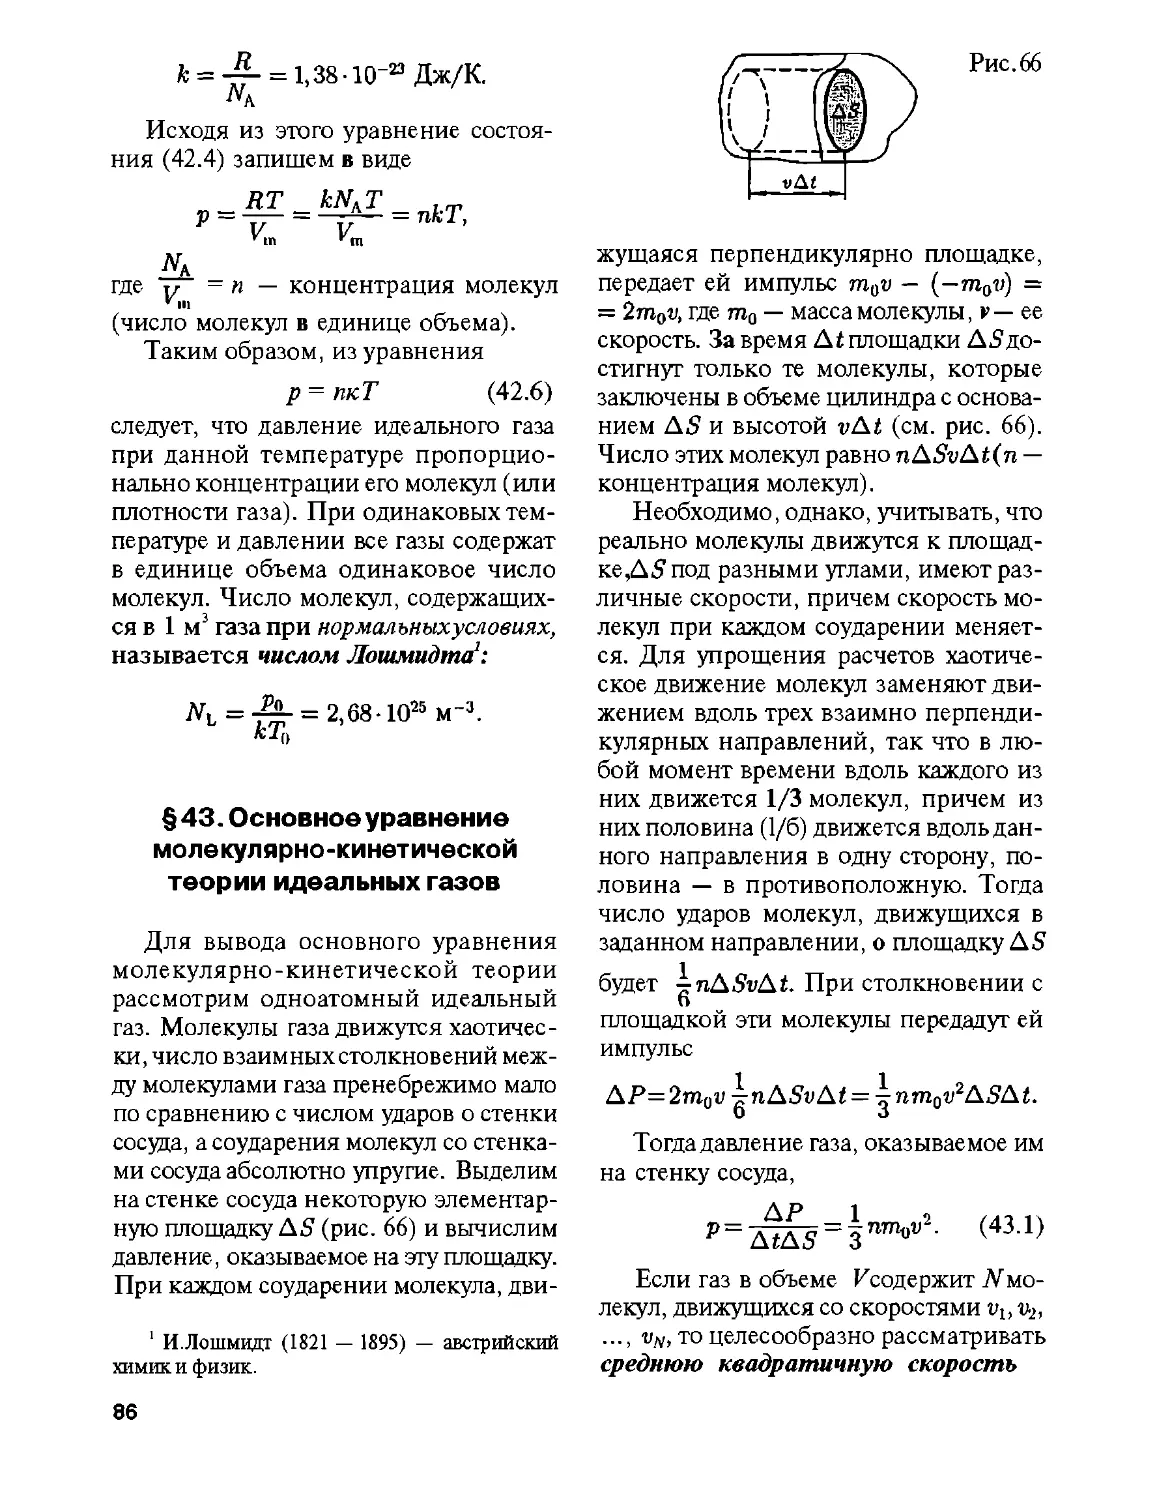 § 43. Основное уравнение молекулярно-кинетической теории идеальных газов